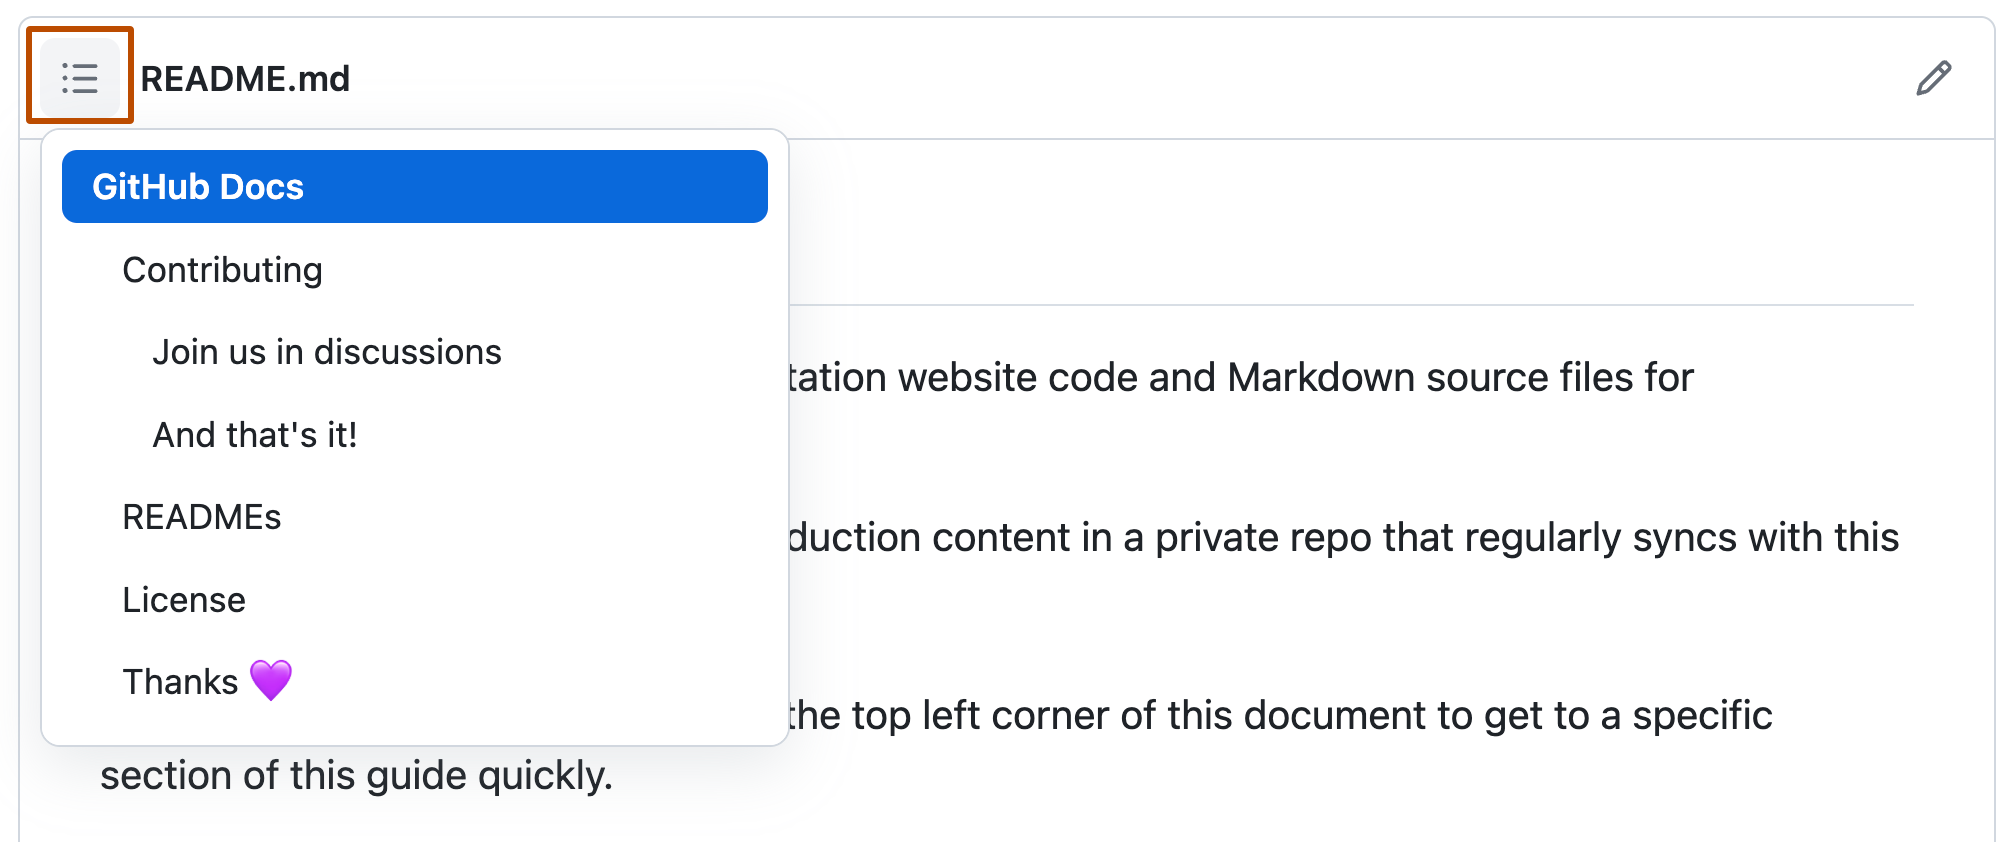 노출되는 목차의 드롭다운 메뉴가 있는 GitHub Docs 오픈 소스 리포지토리의 추가 정보 파일 스크린샷 목차 아이콘은 진한 주황색으로 표시됩니다.